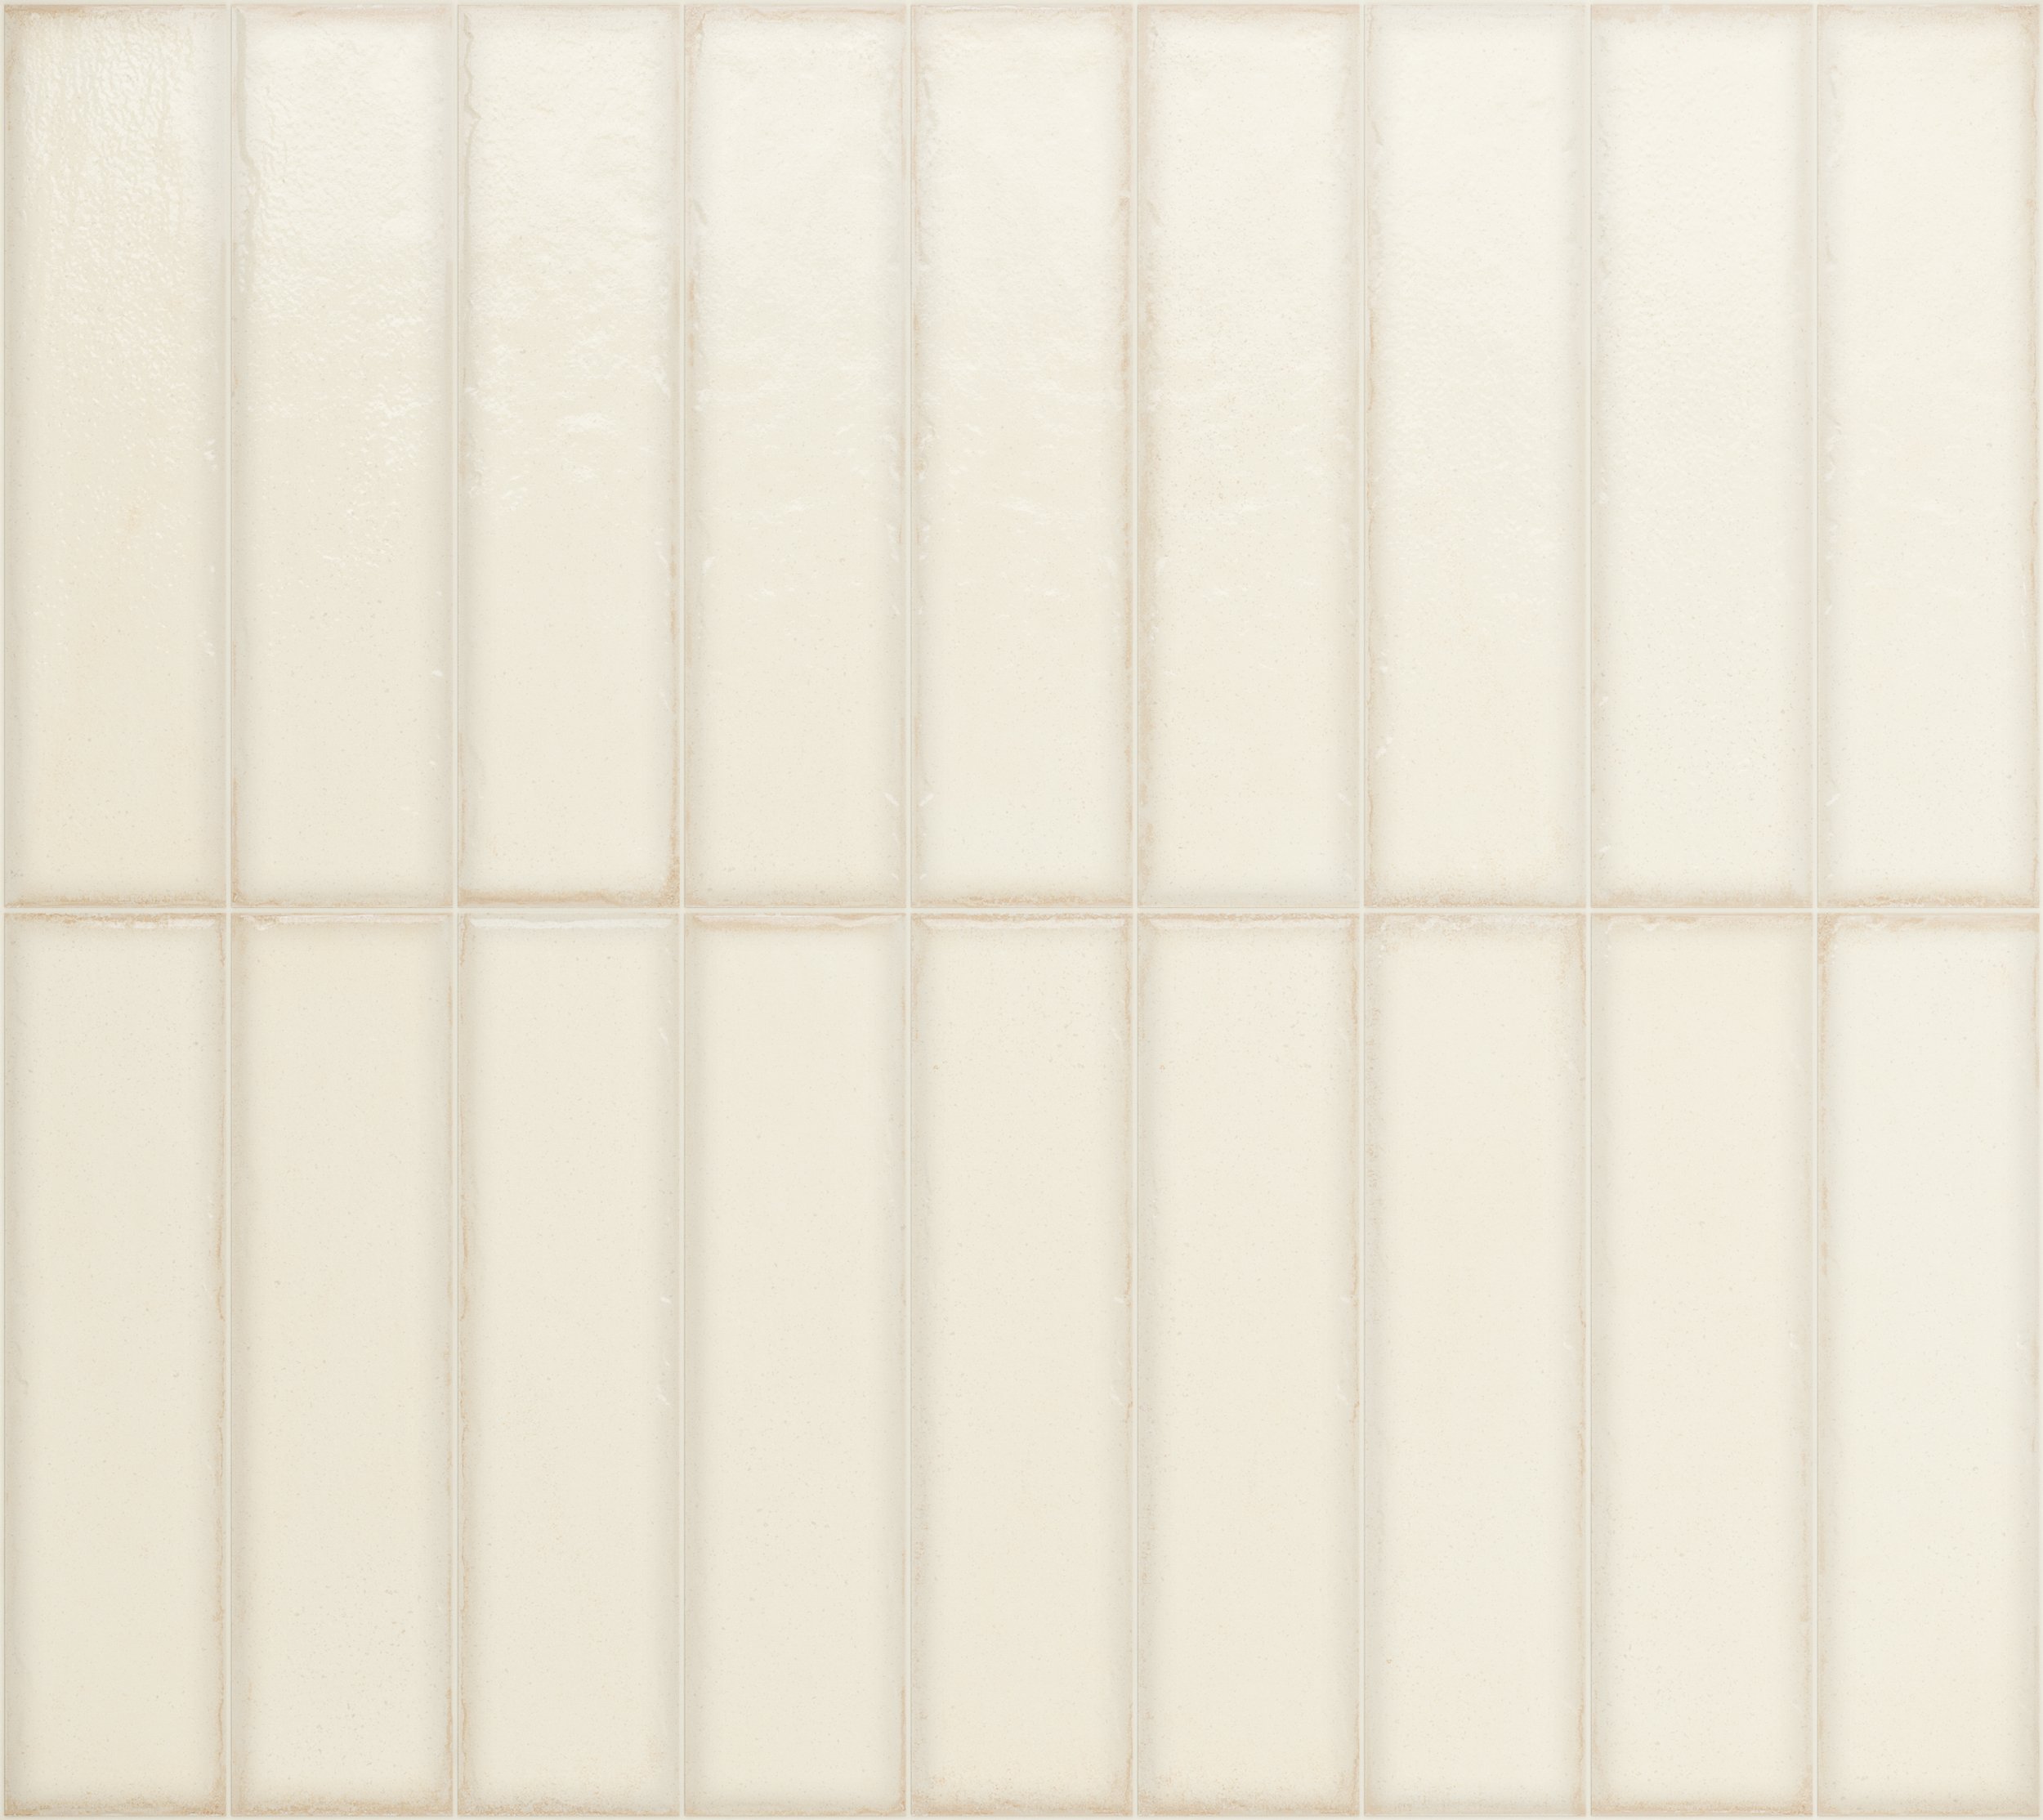 Fliese glasiert unregelmäßige Oberfläche "Tetris White" weiß glänzend 5x20cm